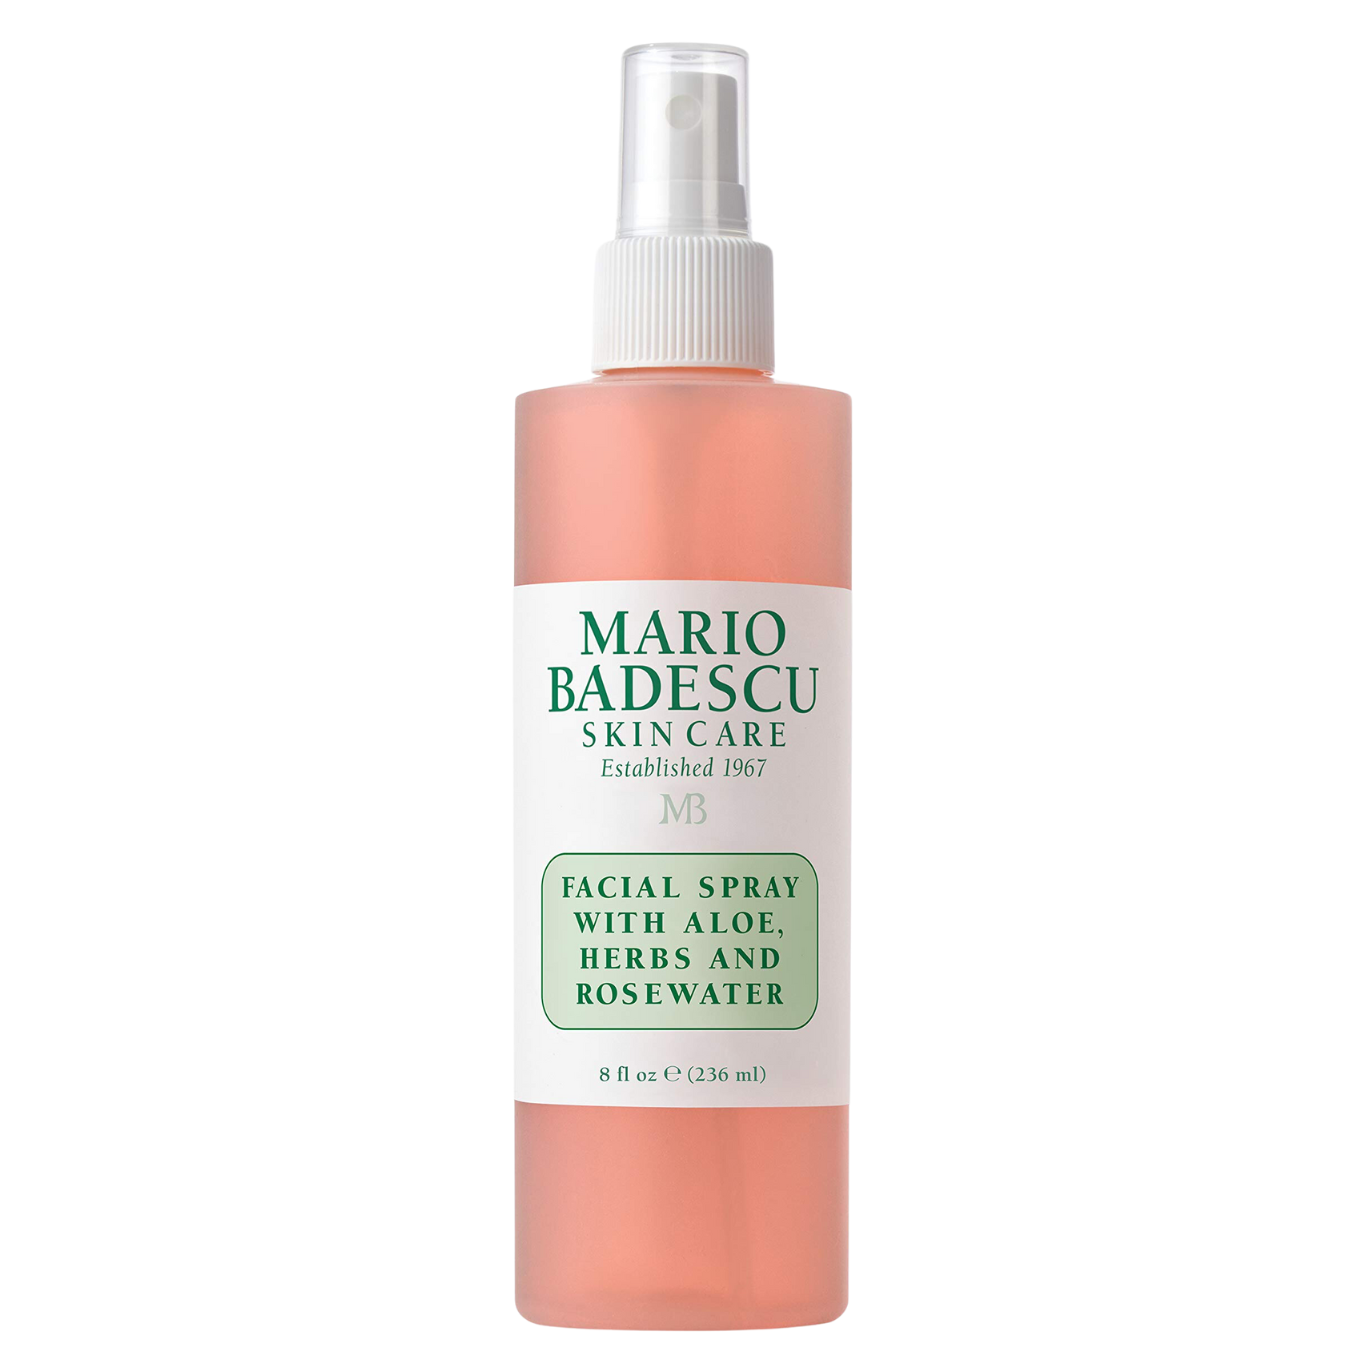 MARIO BADESCU Facial Spray With Aloe, Herbs And Rosewater